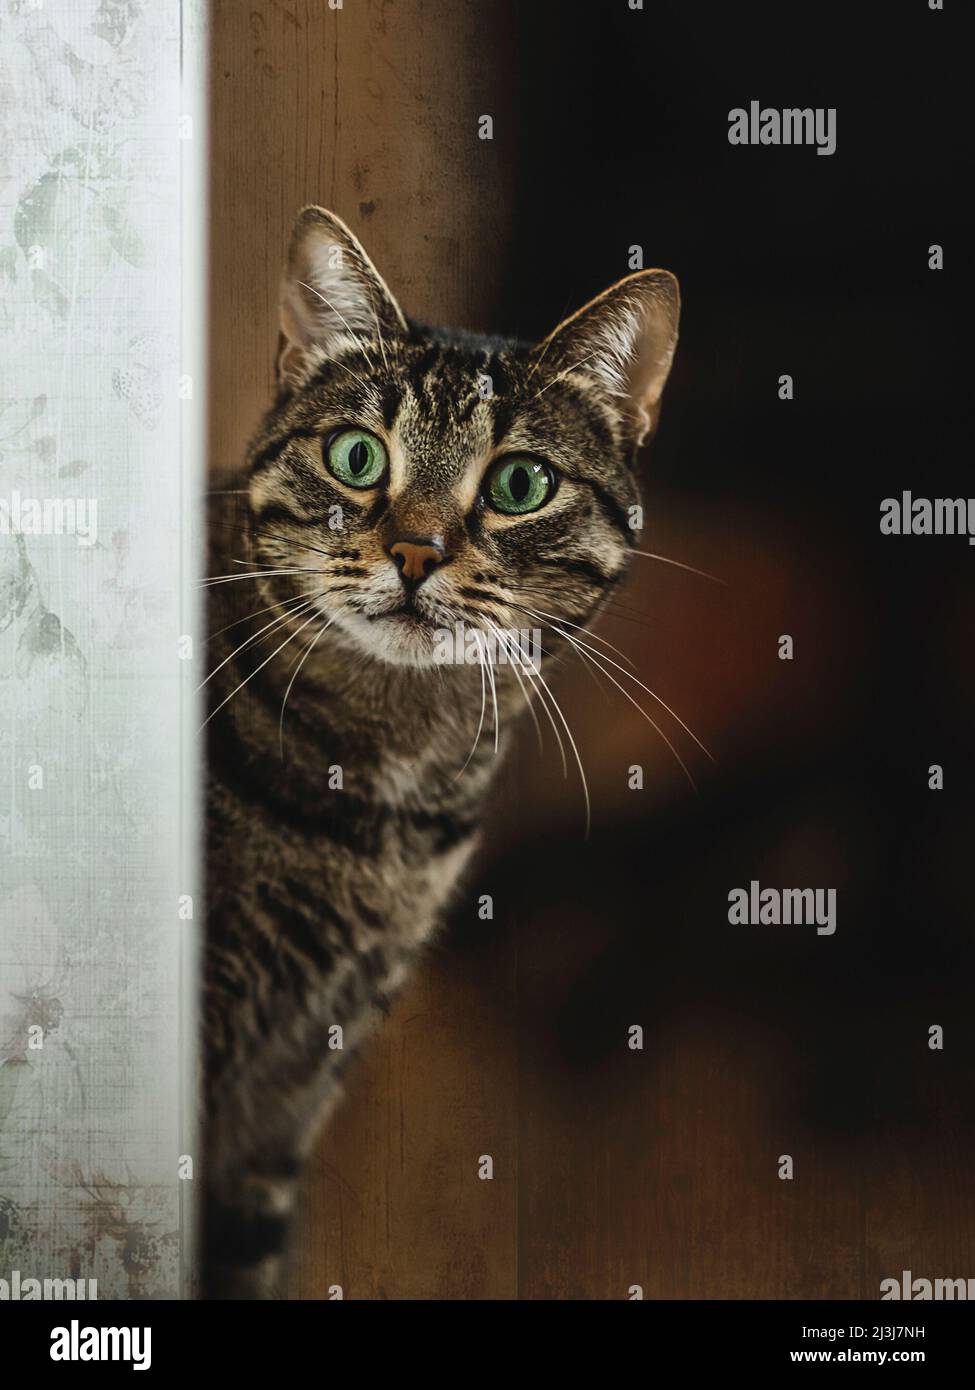 A curious cat. Stock Photo